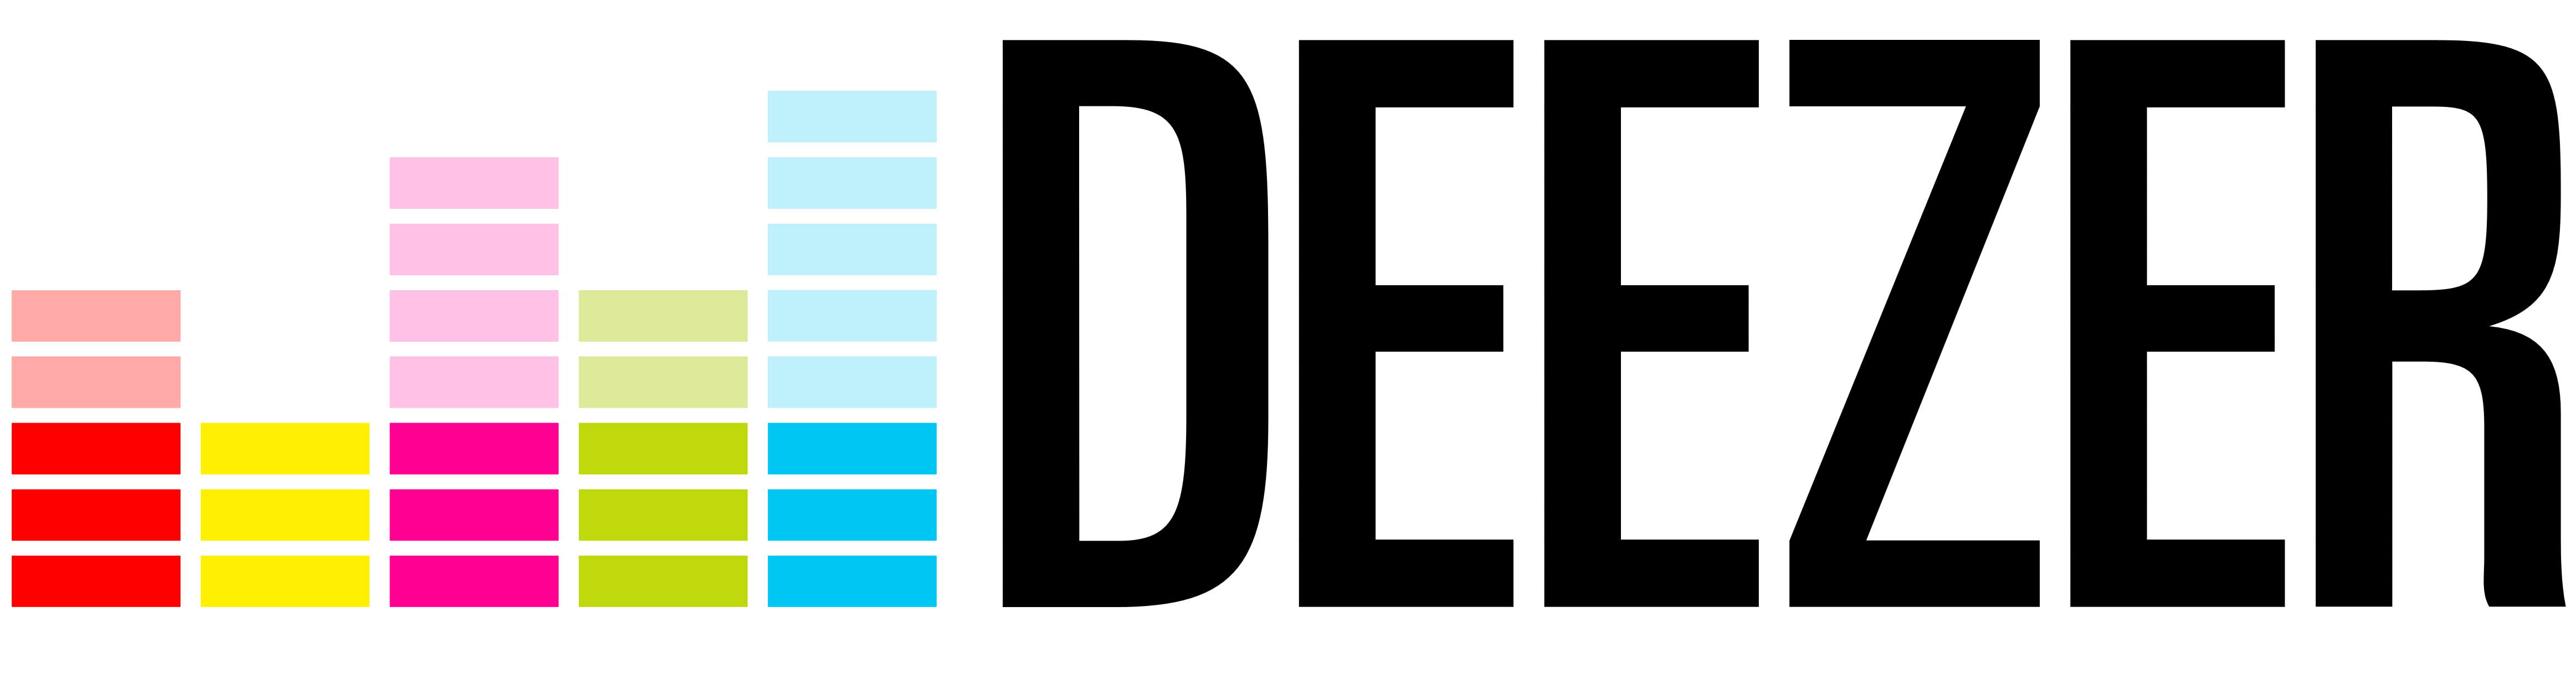 Deezer Logo Vector